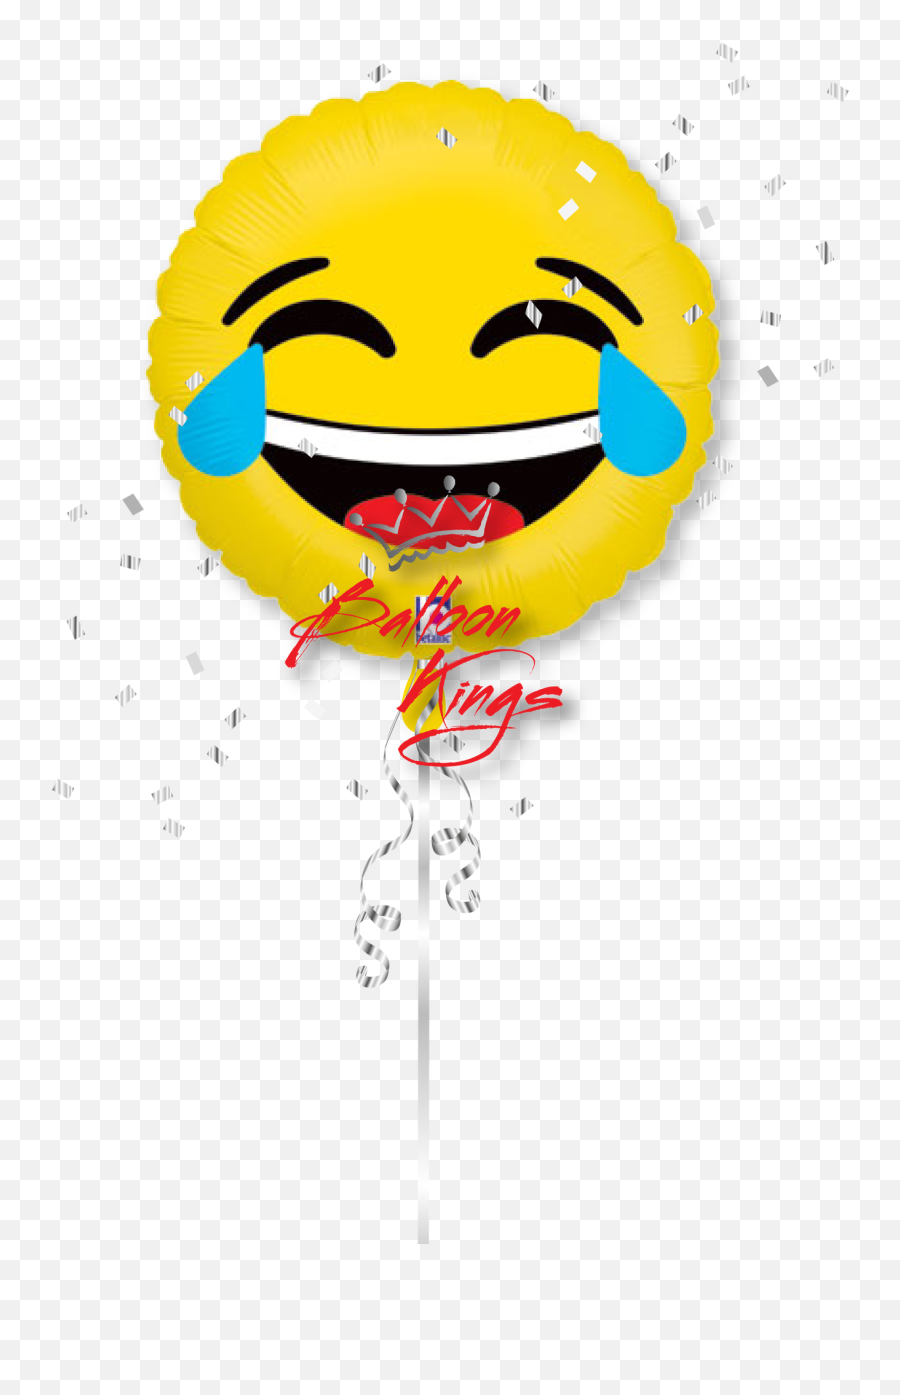 Download Emoji Lol Balloon Kings - Oc Party Supply Emoji Piñata De Emoji Riendo Png,Party Emoji Png